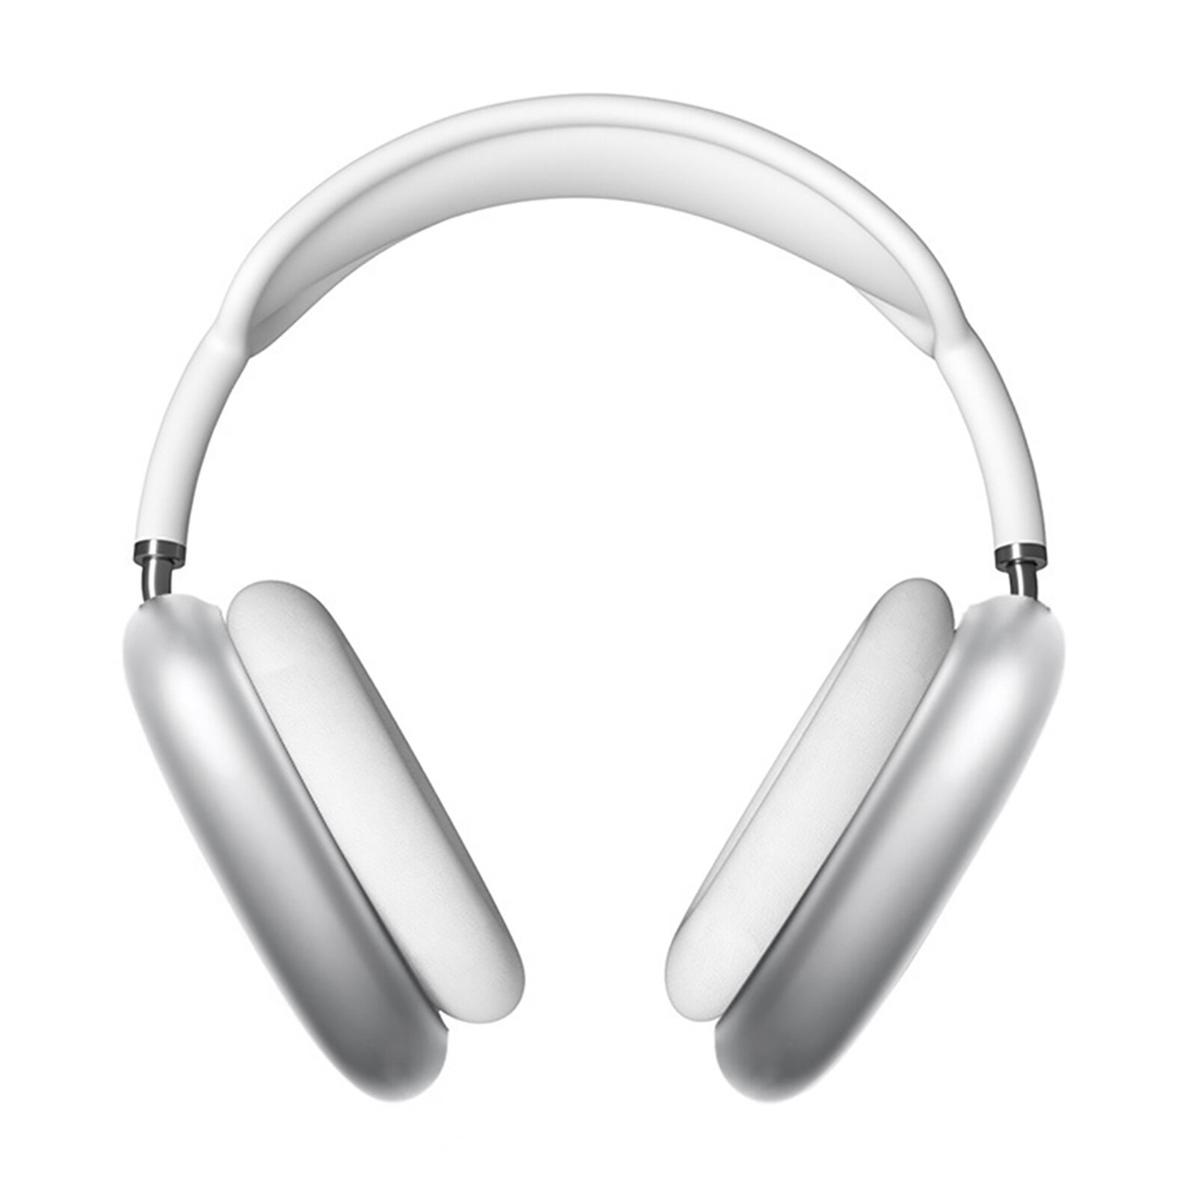 Descubre las ventajas de los auriculares bluetooth personalizados